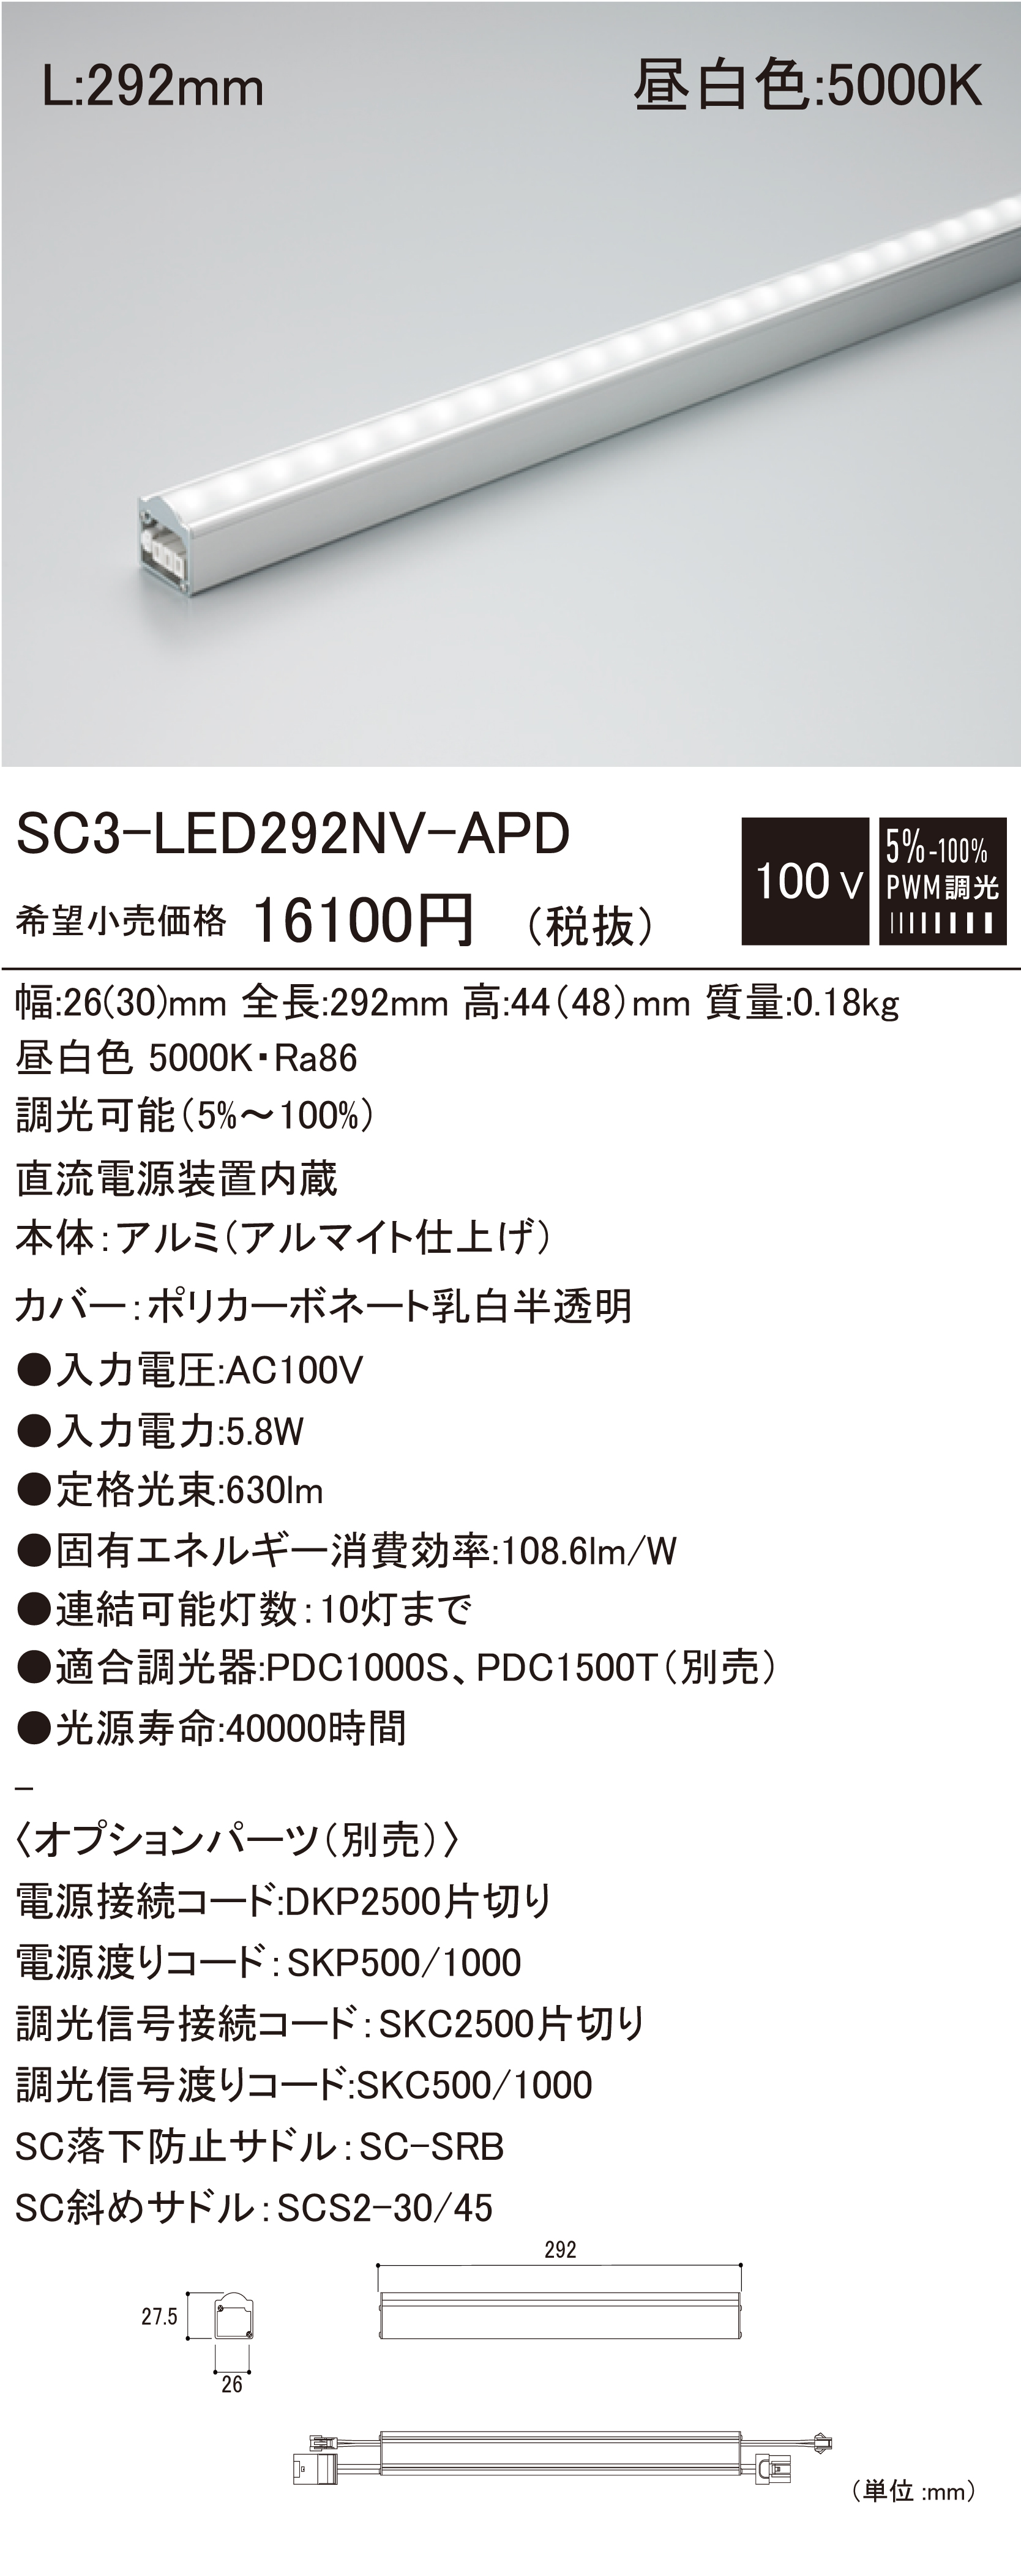 SC3-LED-APD 建築化照明 ダウンロード | DNライティング株式会社